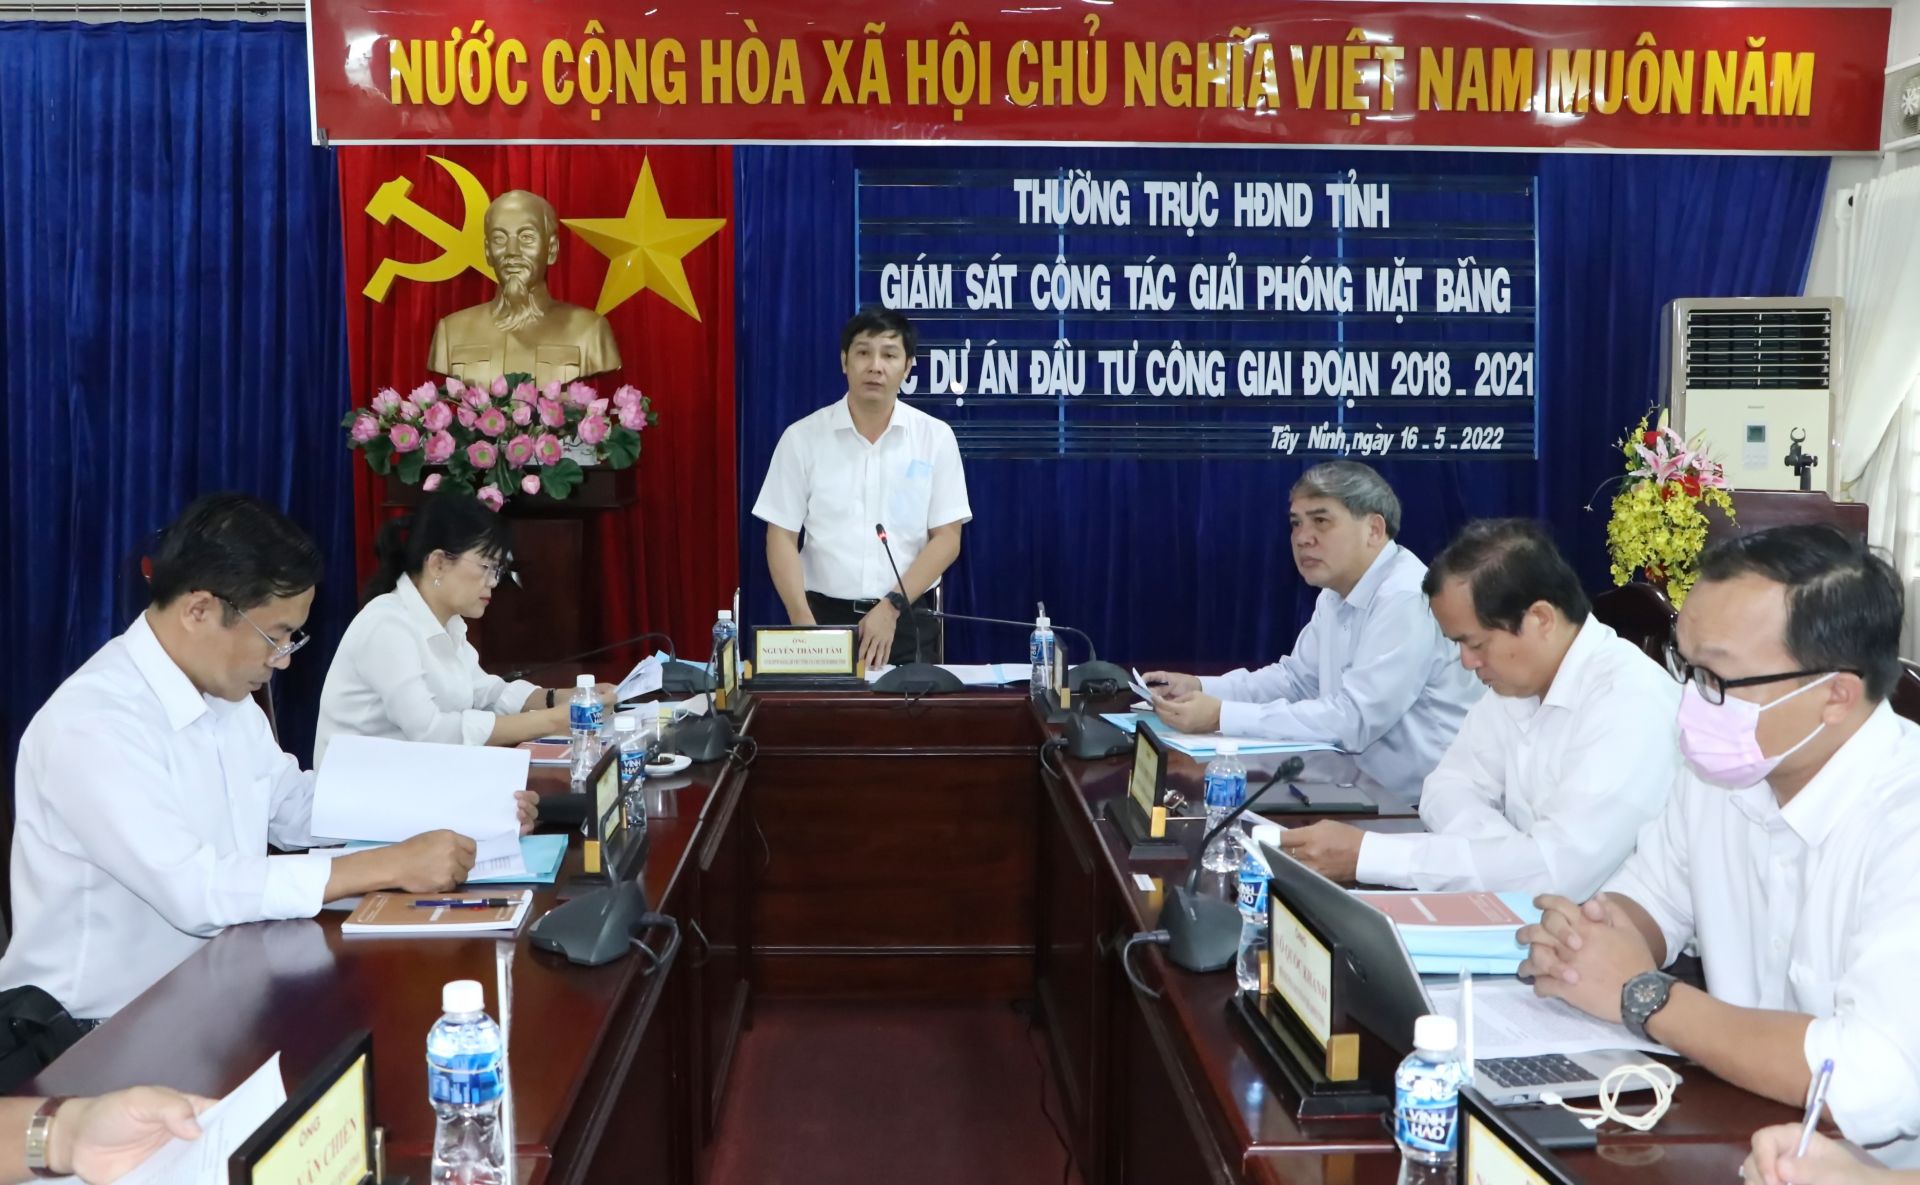 Điểm báo in Tây Ninh ngày 18.05.2022